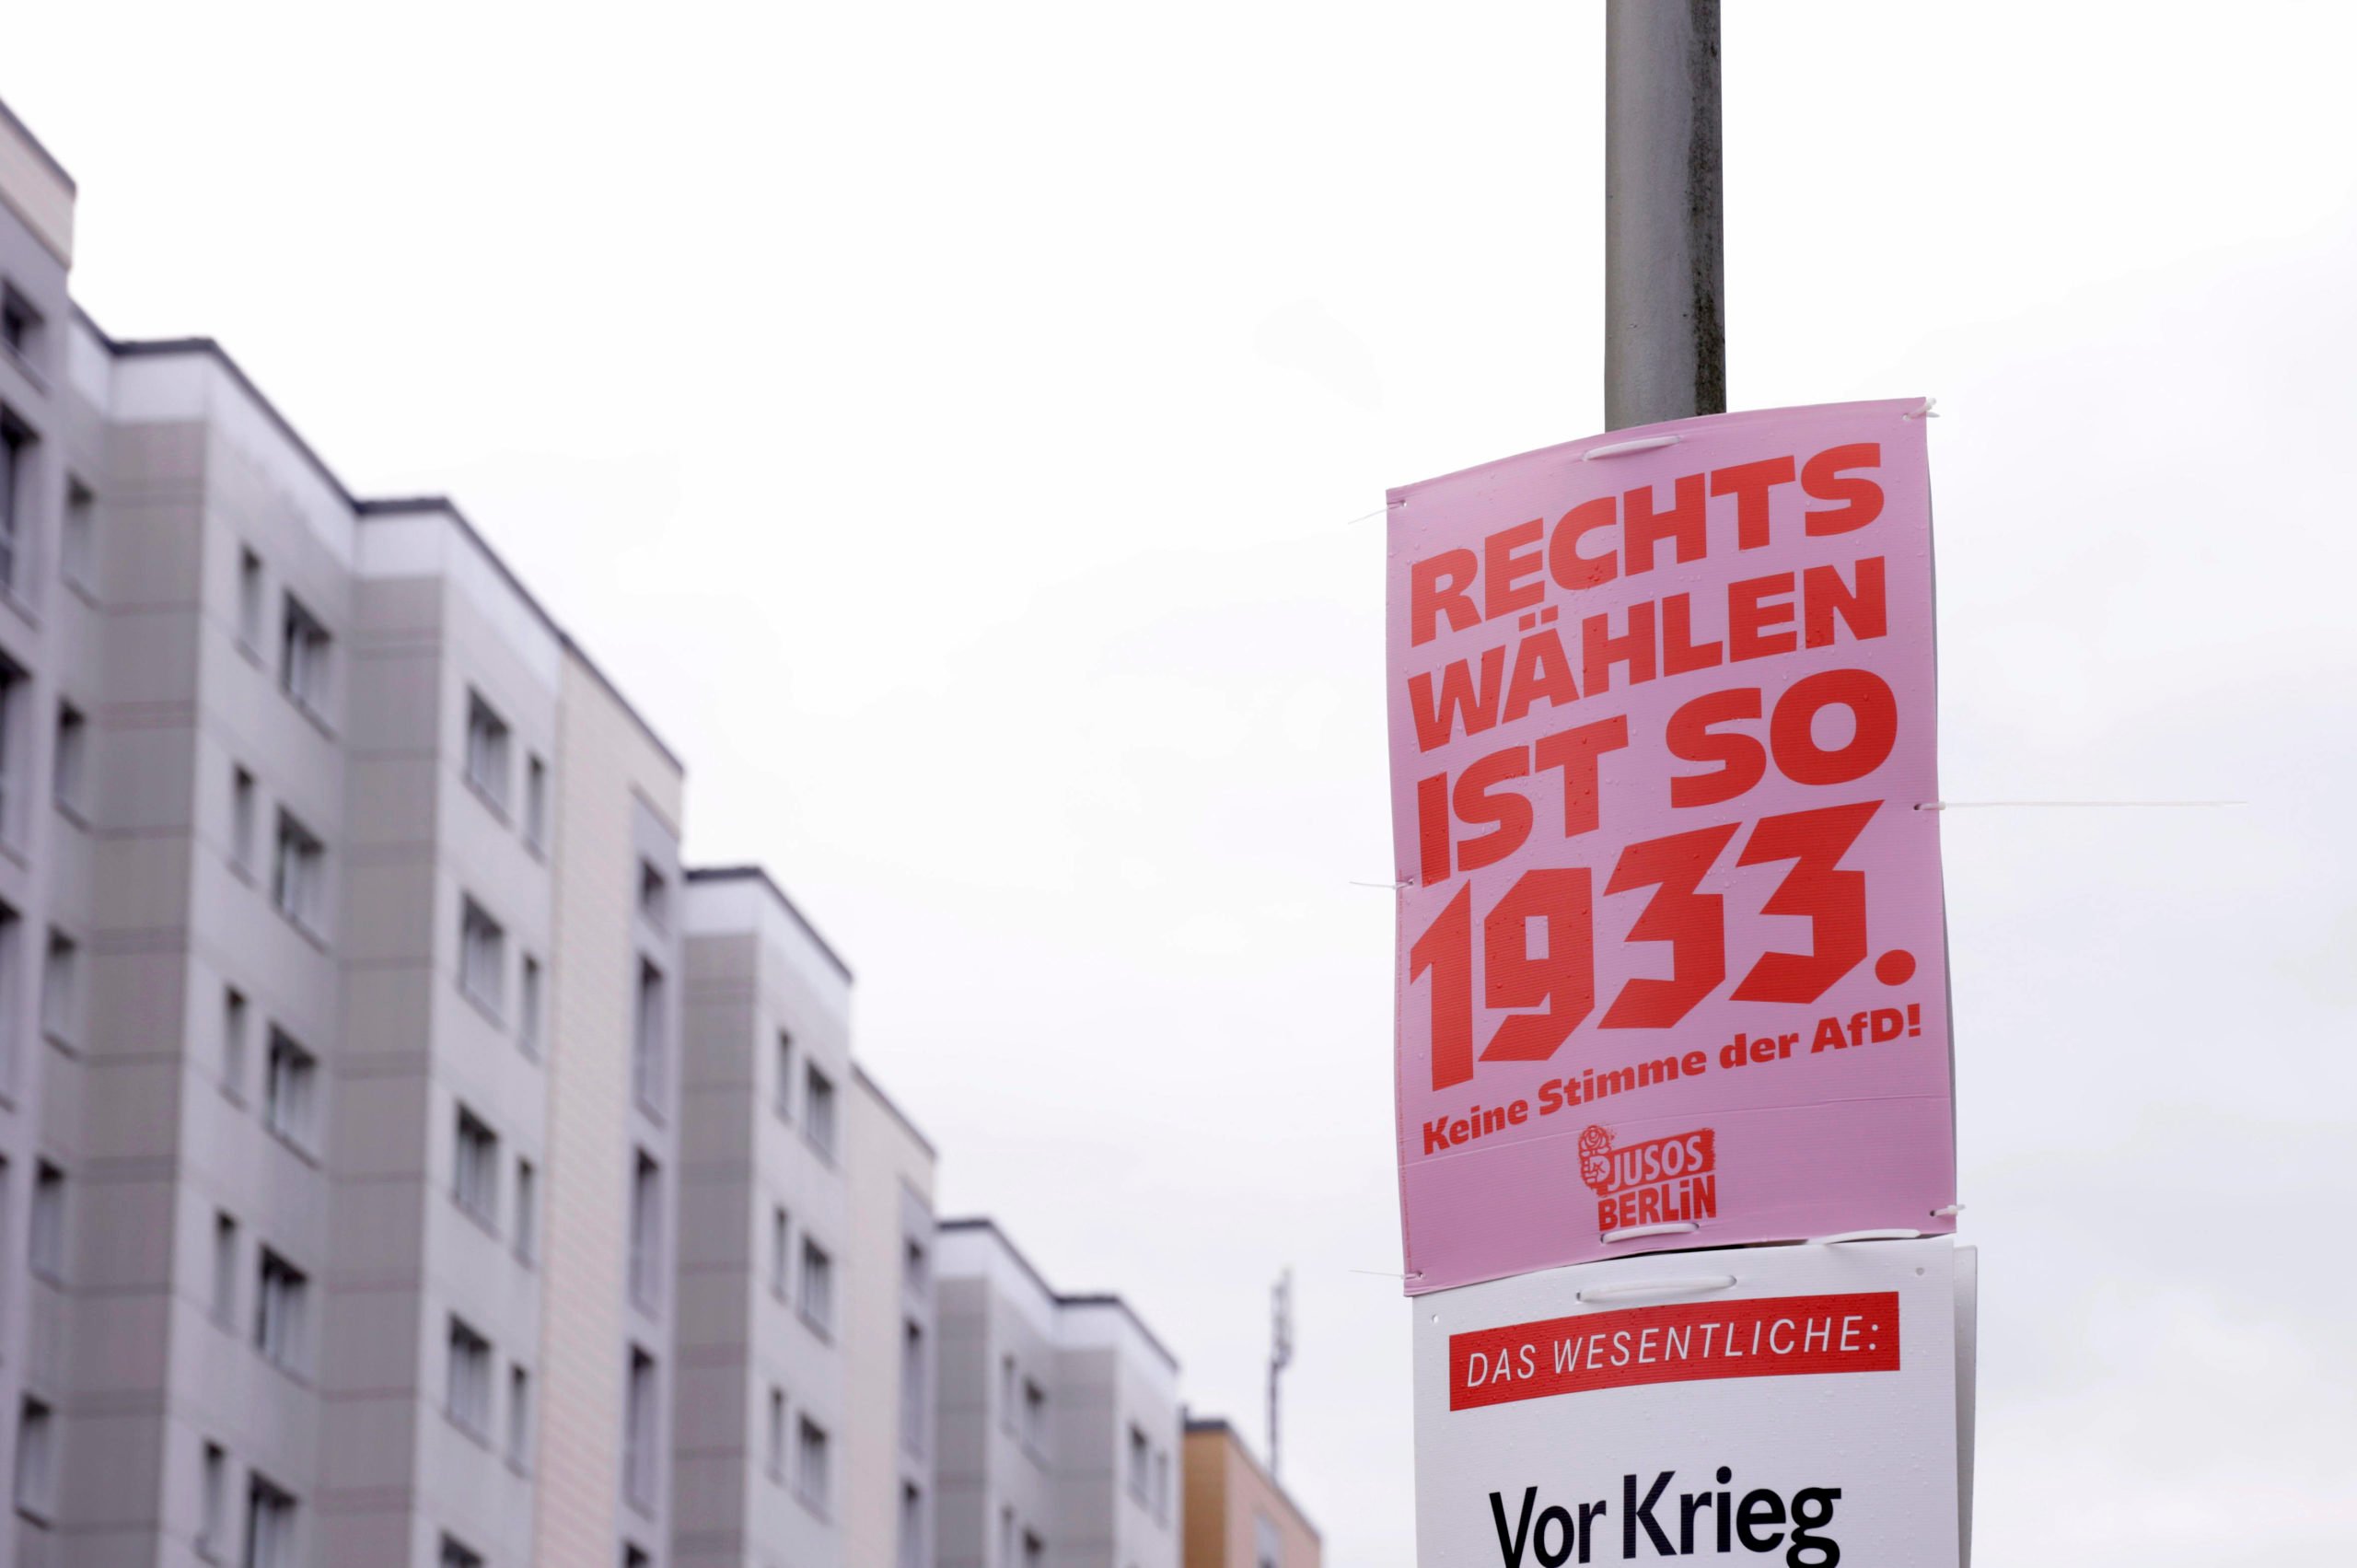 Wahlplakate in berlin: Ein kundiger Mediengestalter war hier am Werk: Wahlplakat der Jusos – "Rechts wählen ist so 1933 - Keine Stimme der AfD". Foto: Imago/S. Gabsch/Future Image